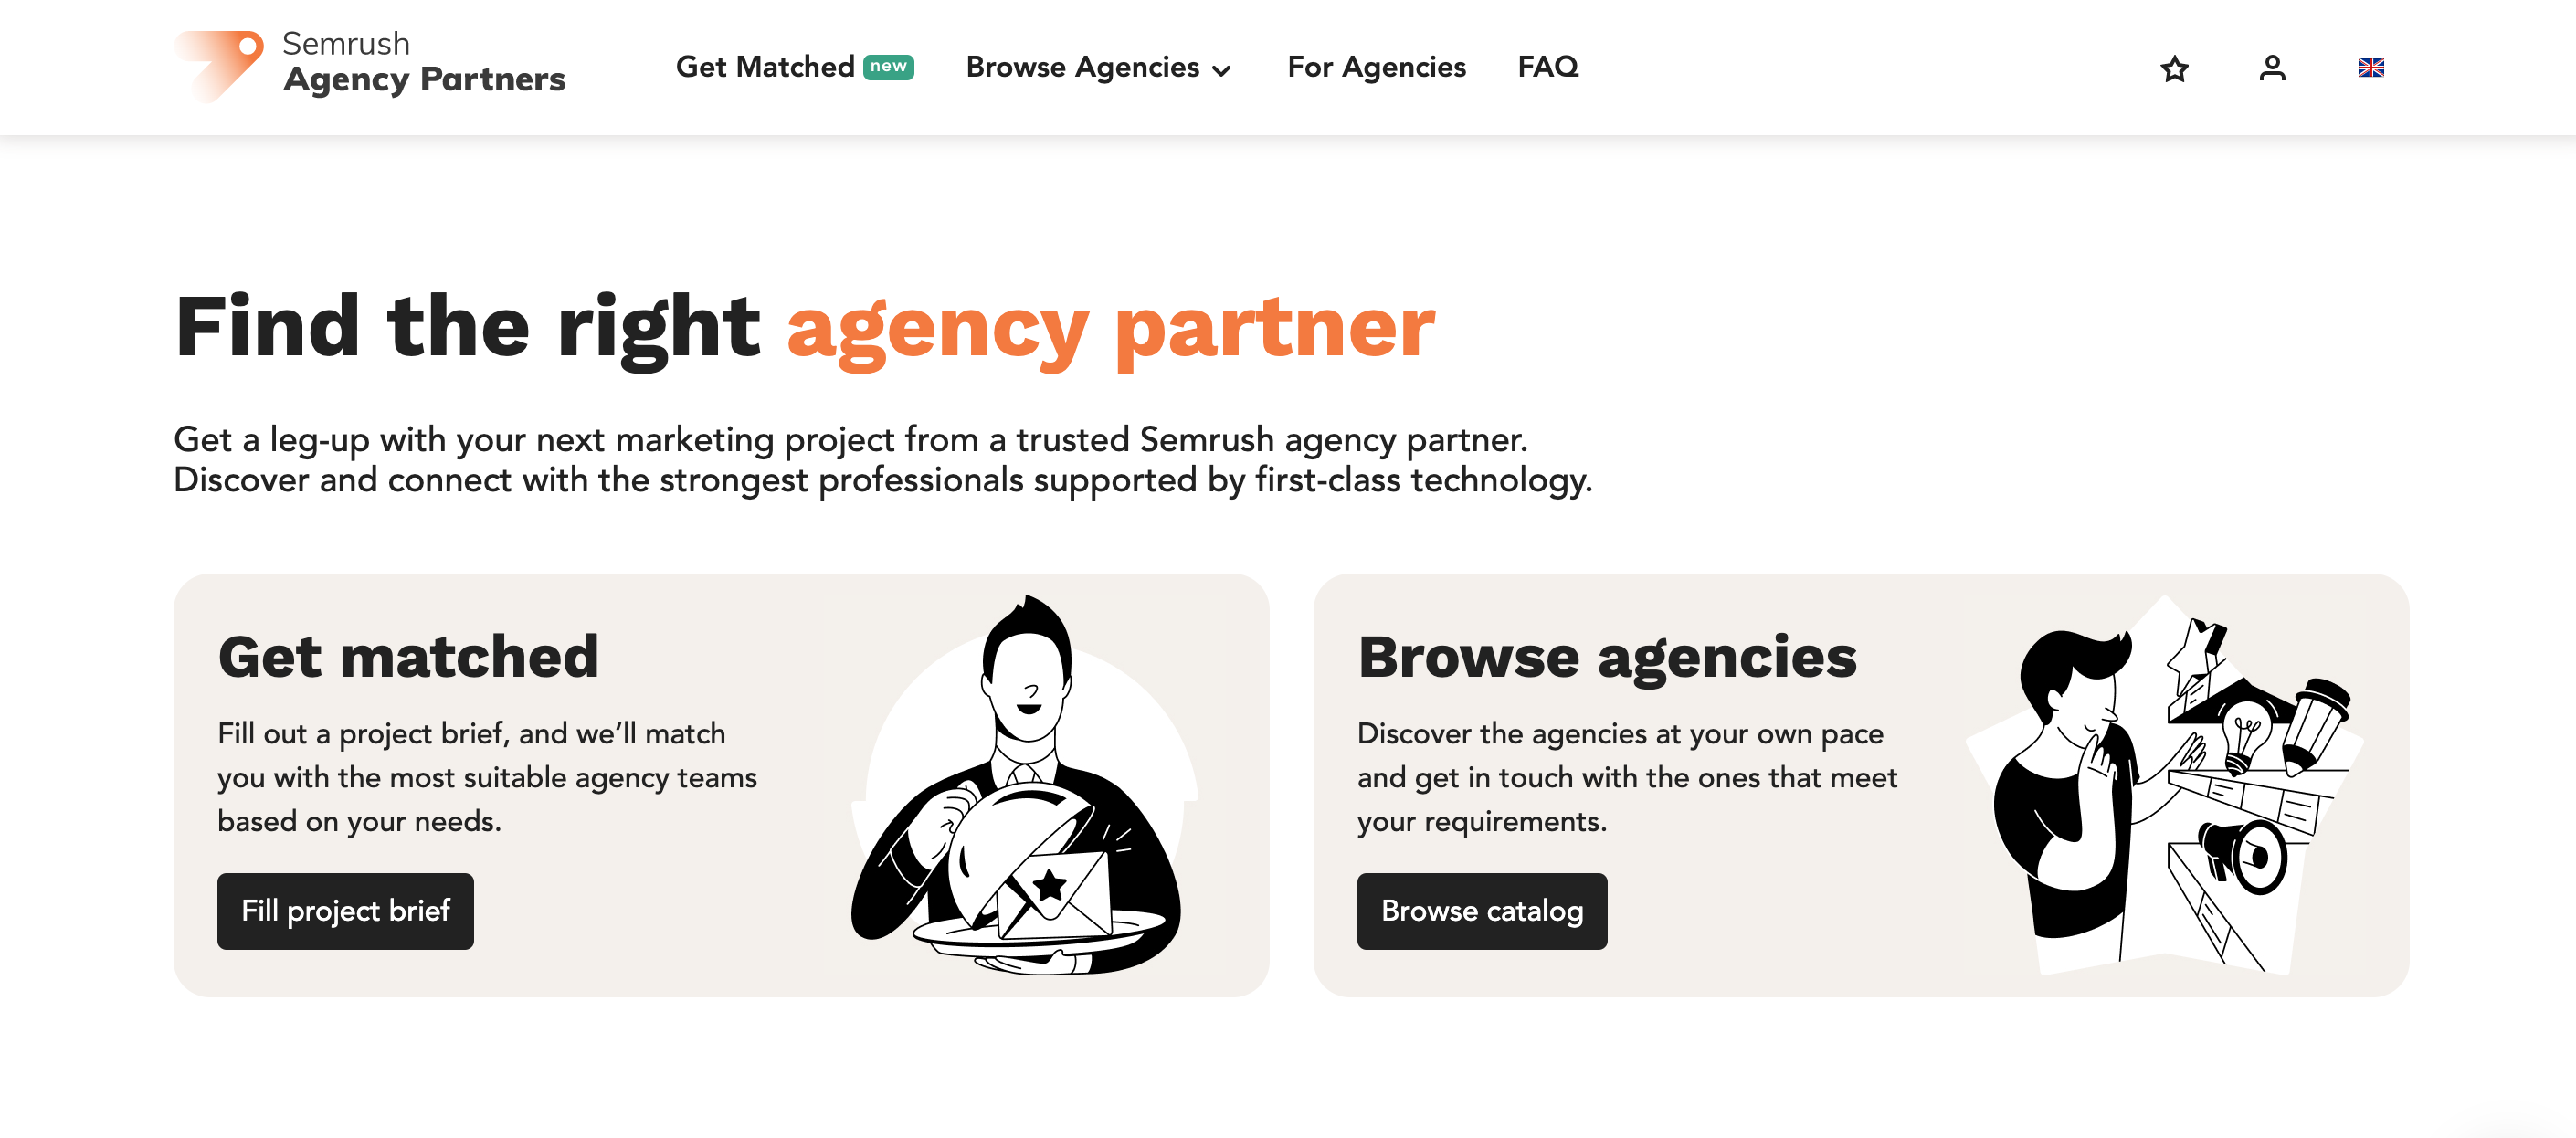 La page d’accueil de la plateforme Agences partenaires avec des boutons vous permettant de décrire votre projet et d’être mis en relation avec une agence ou de parcourir le catalogue des agences. 